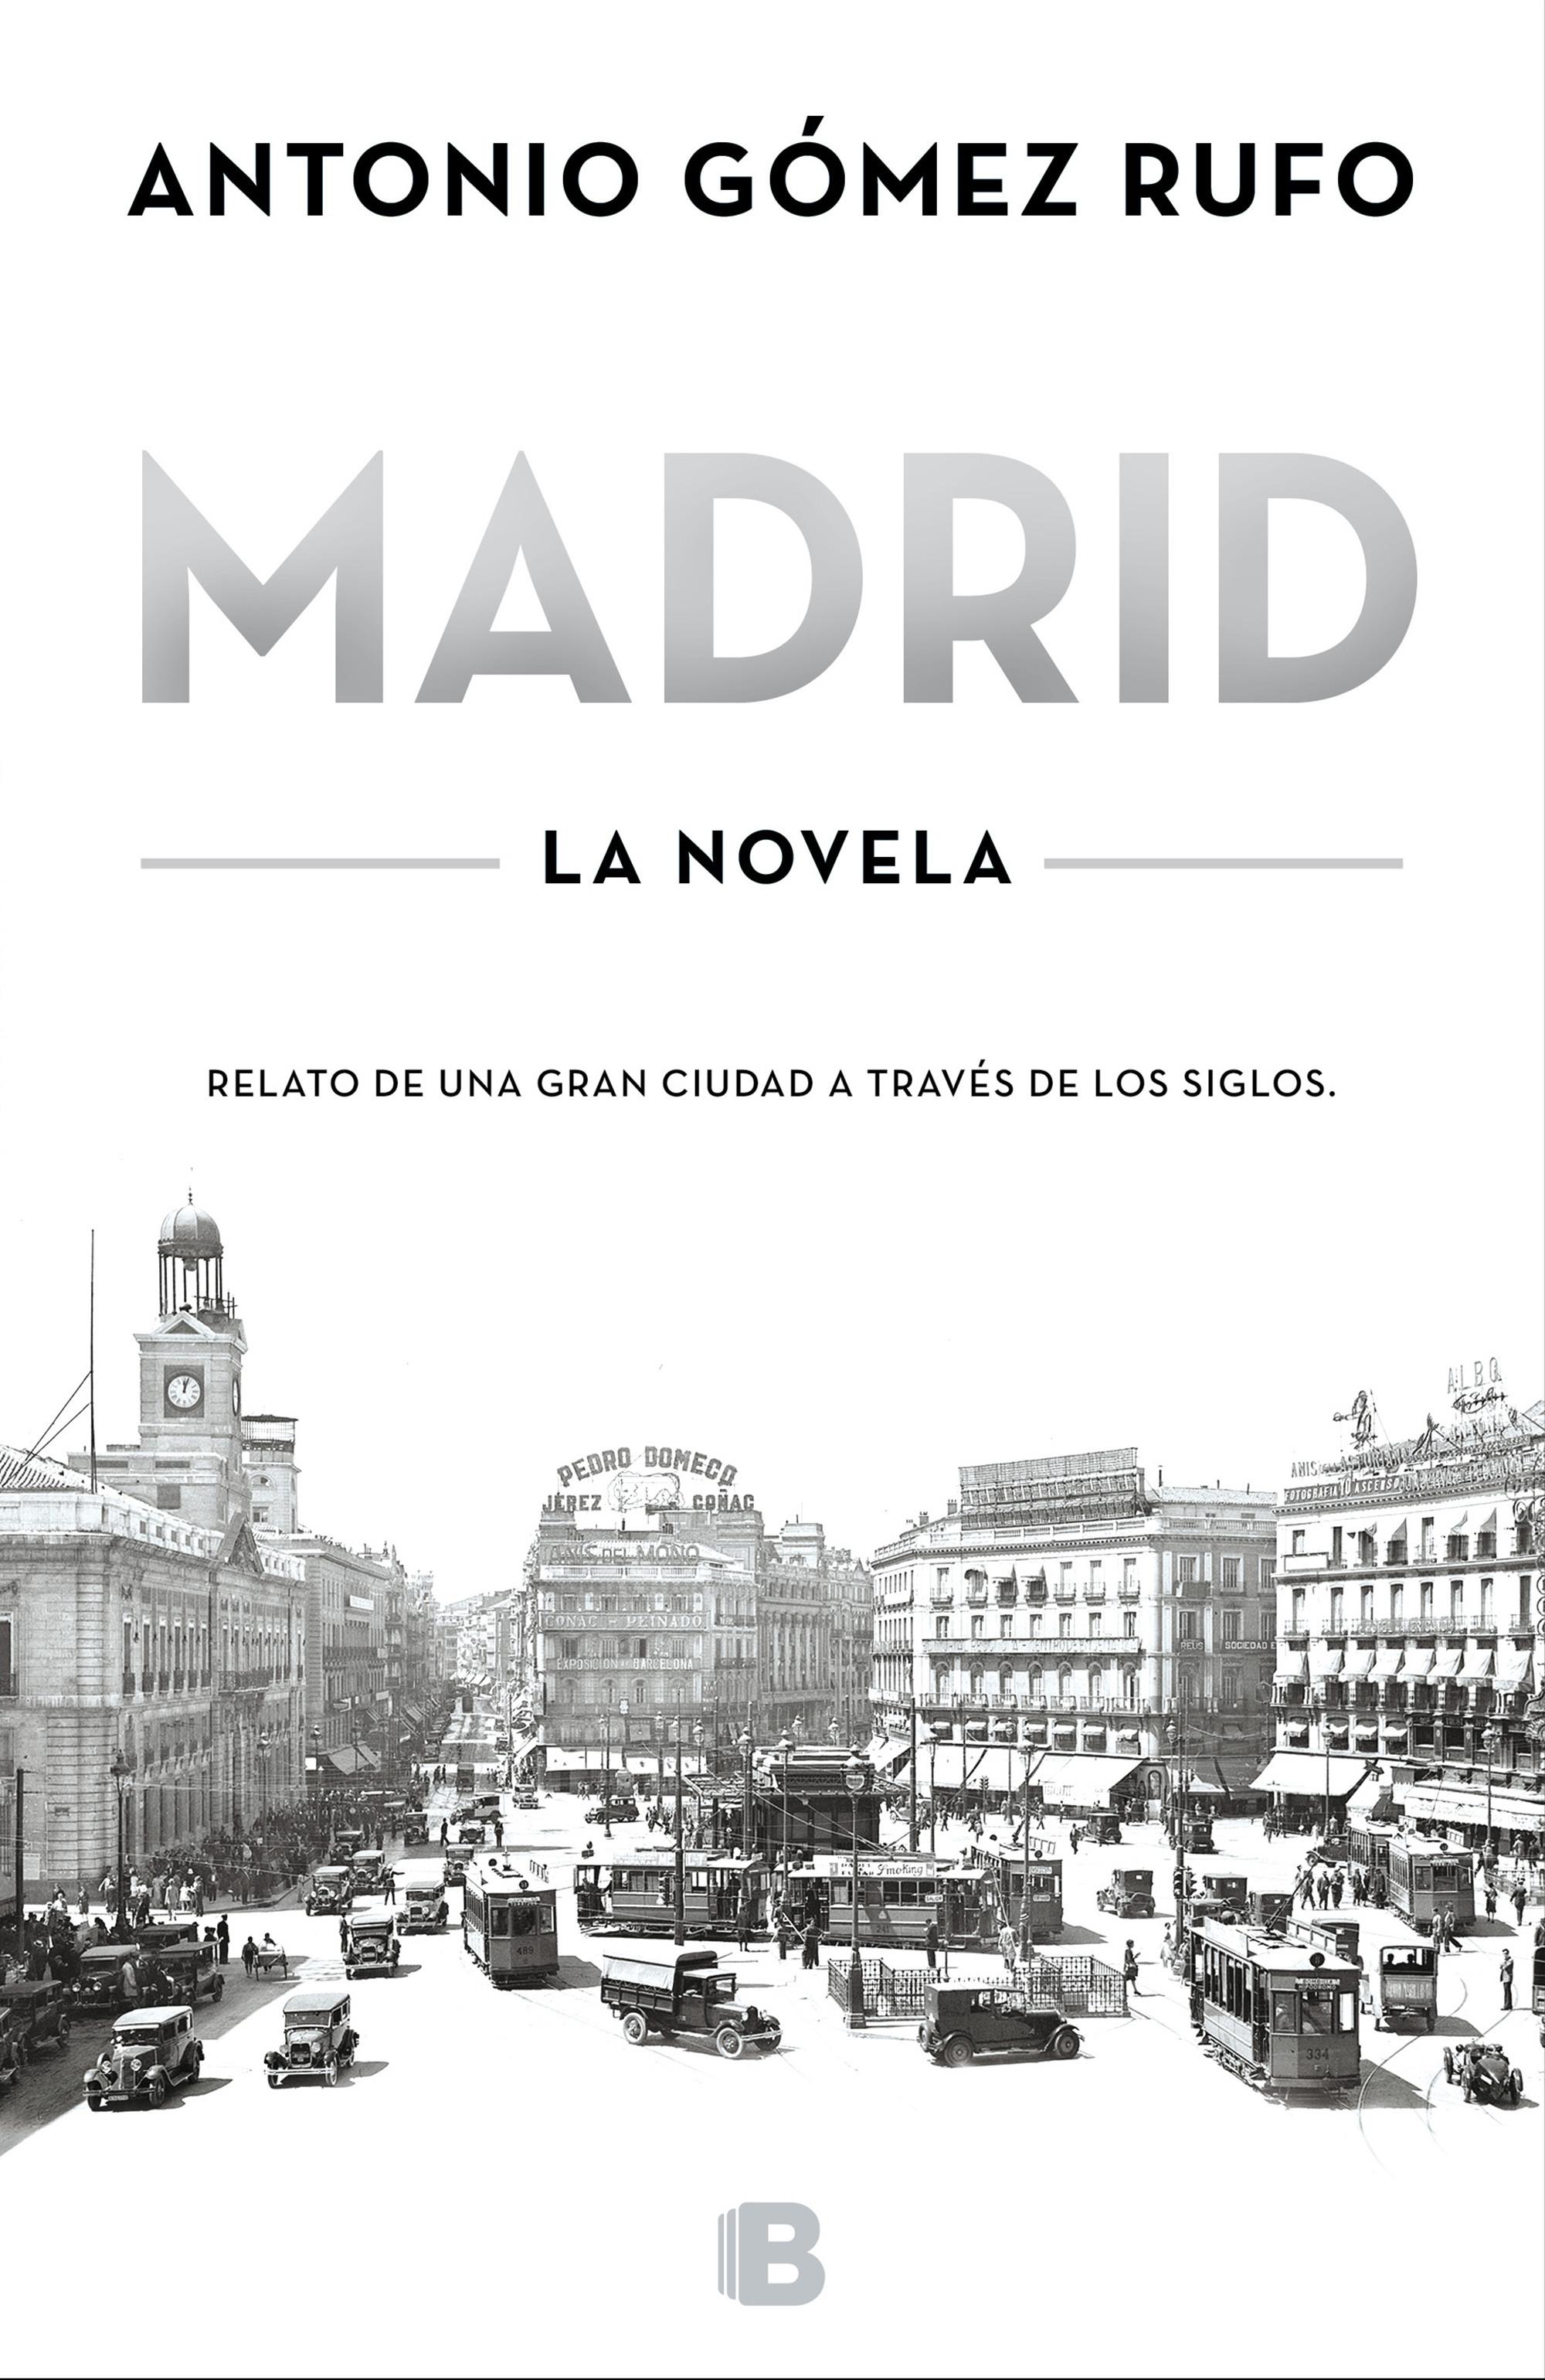 Madrid. La novela "Relato de una gran ciudad a través de los siglos". 